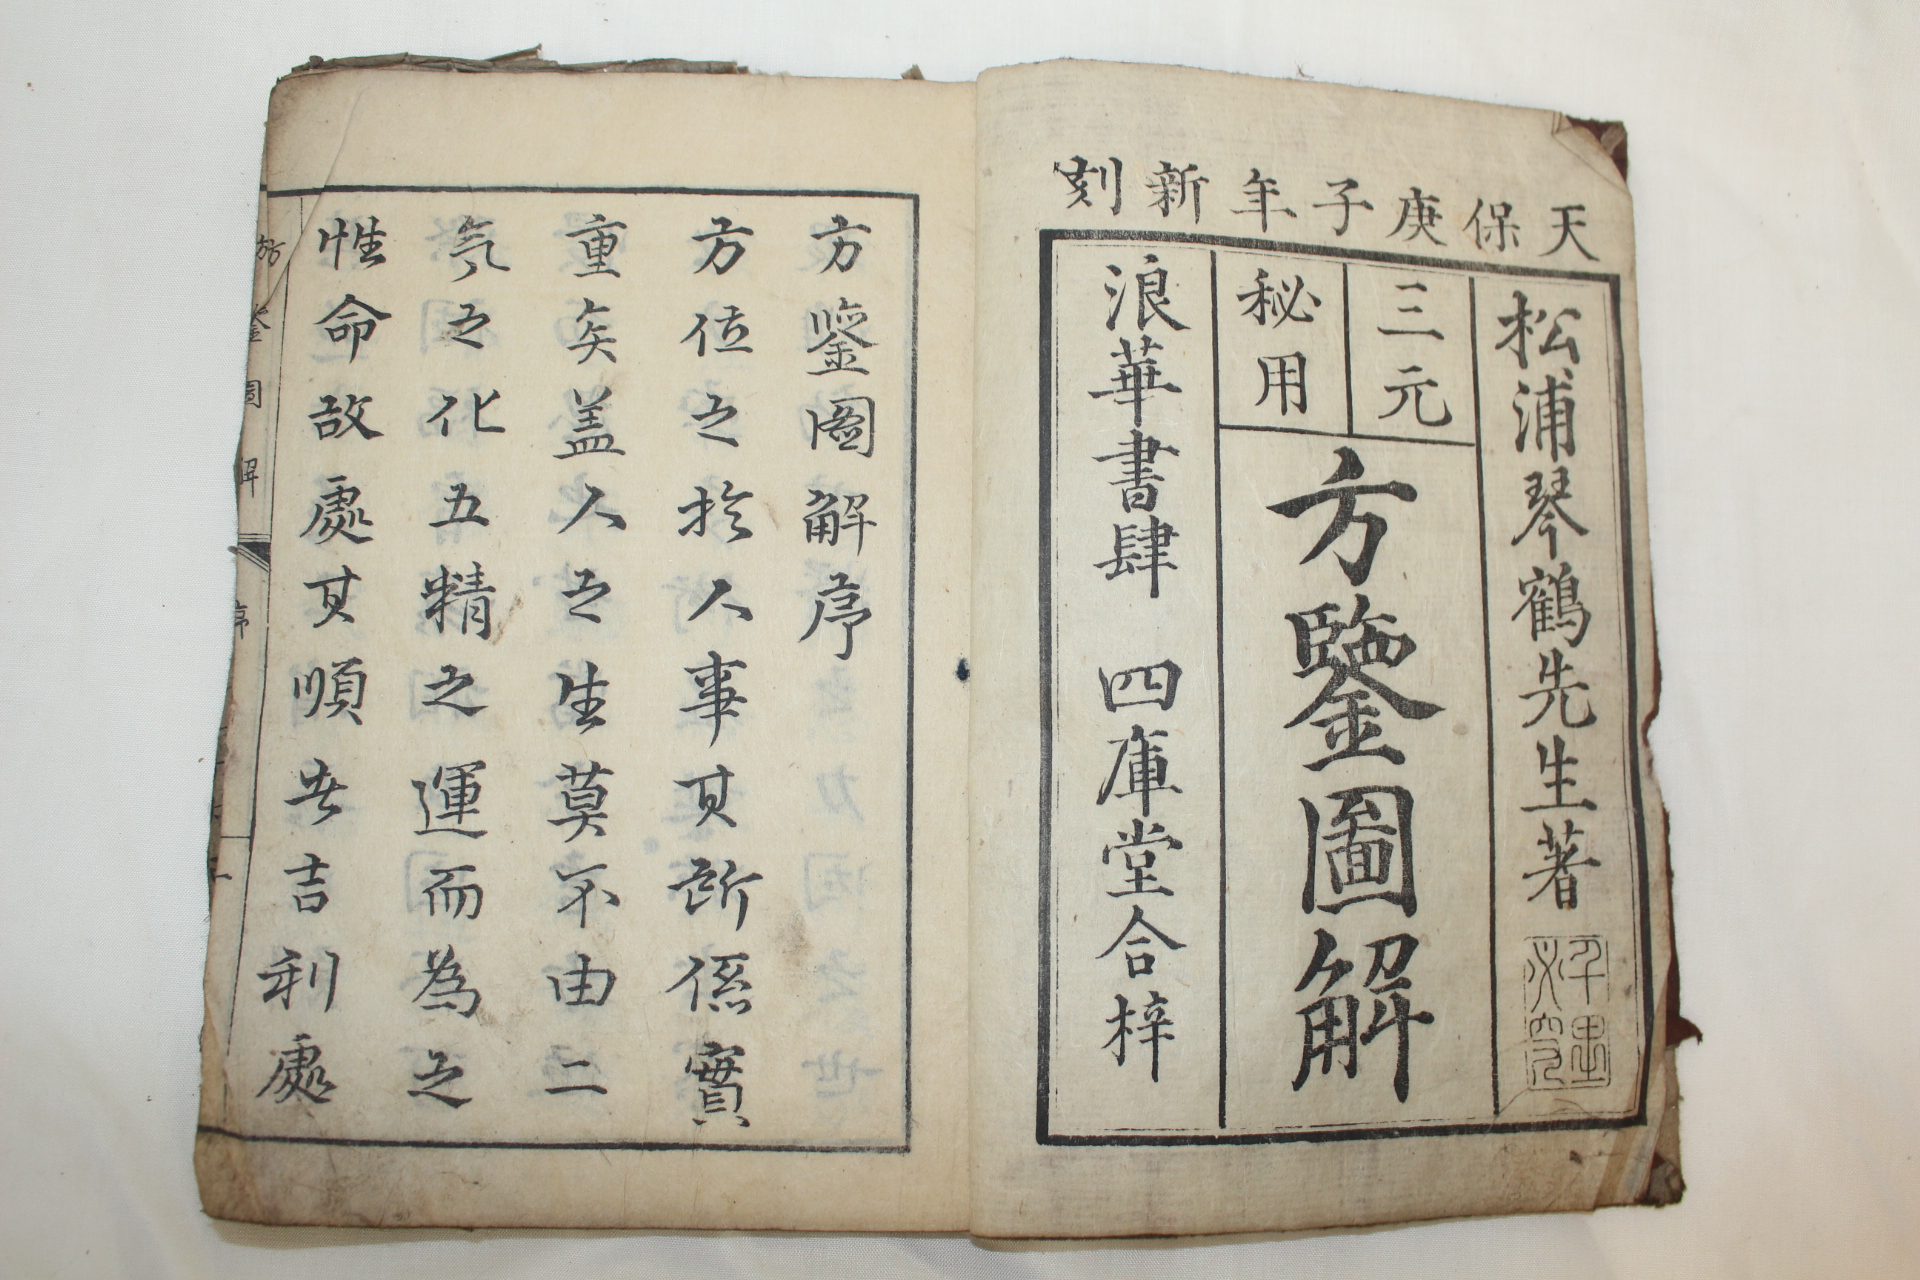 1840년(天保庚子年) 목판본 방감도해(方鑒圖解) 2책